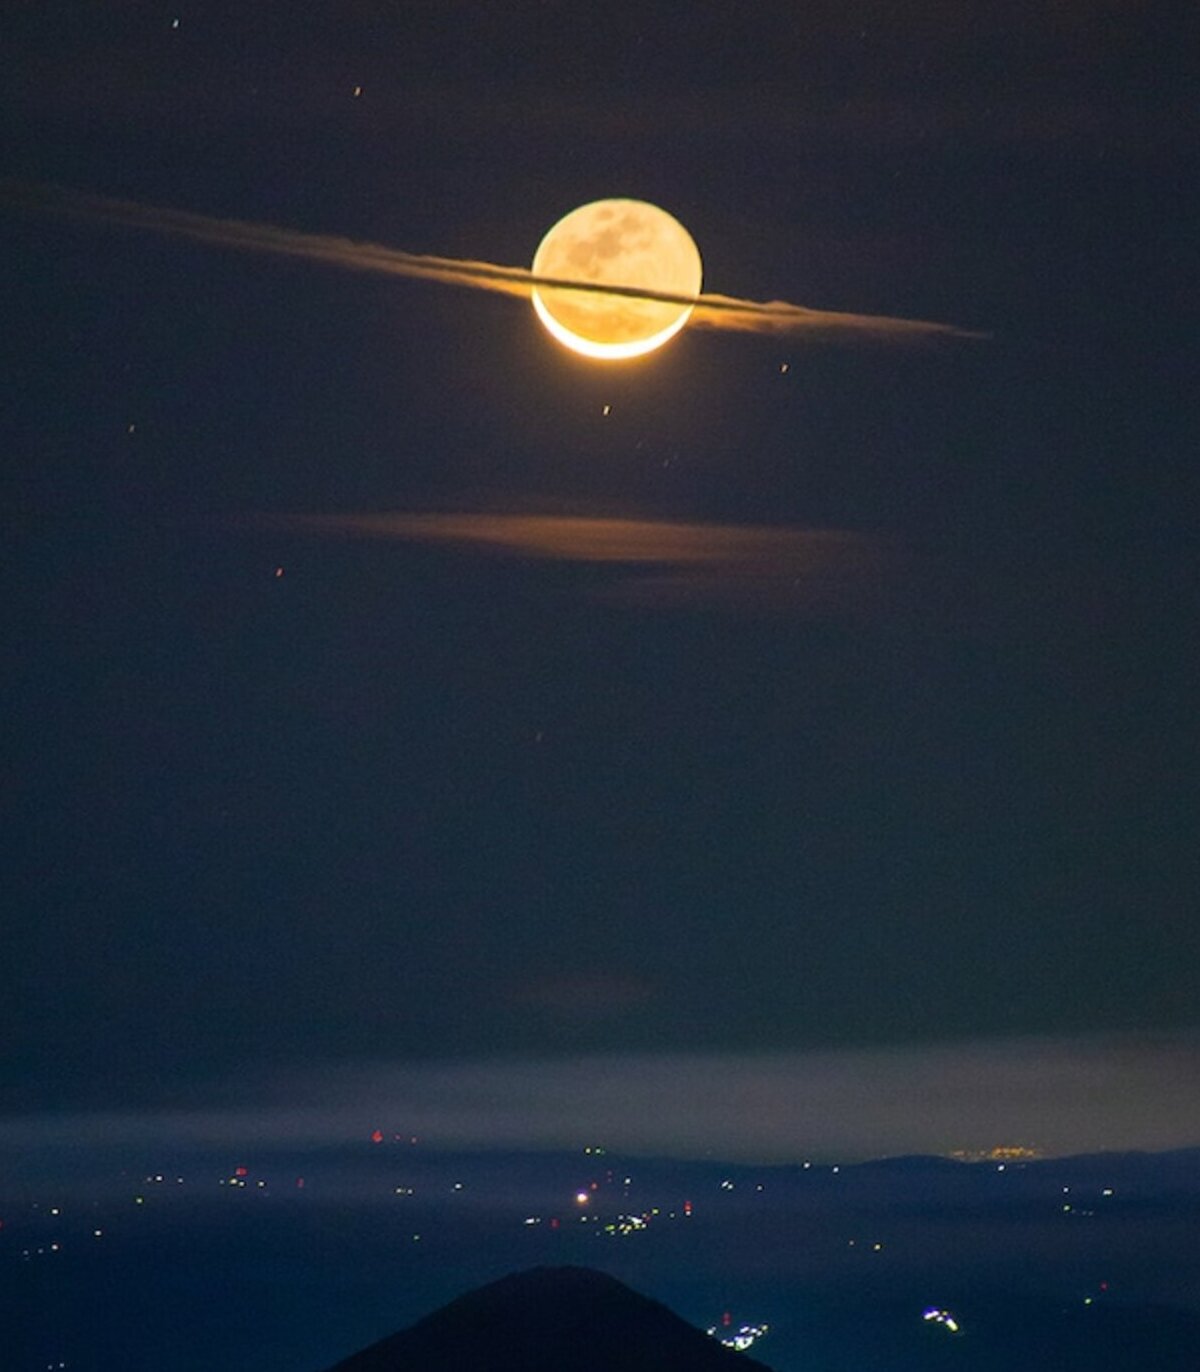 La noche que un fotógrafo guatemalteco captó la Luna vistiéndose de Saturno